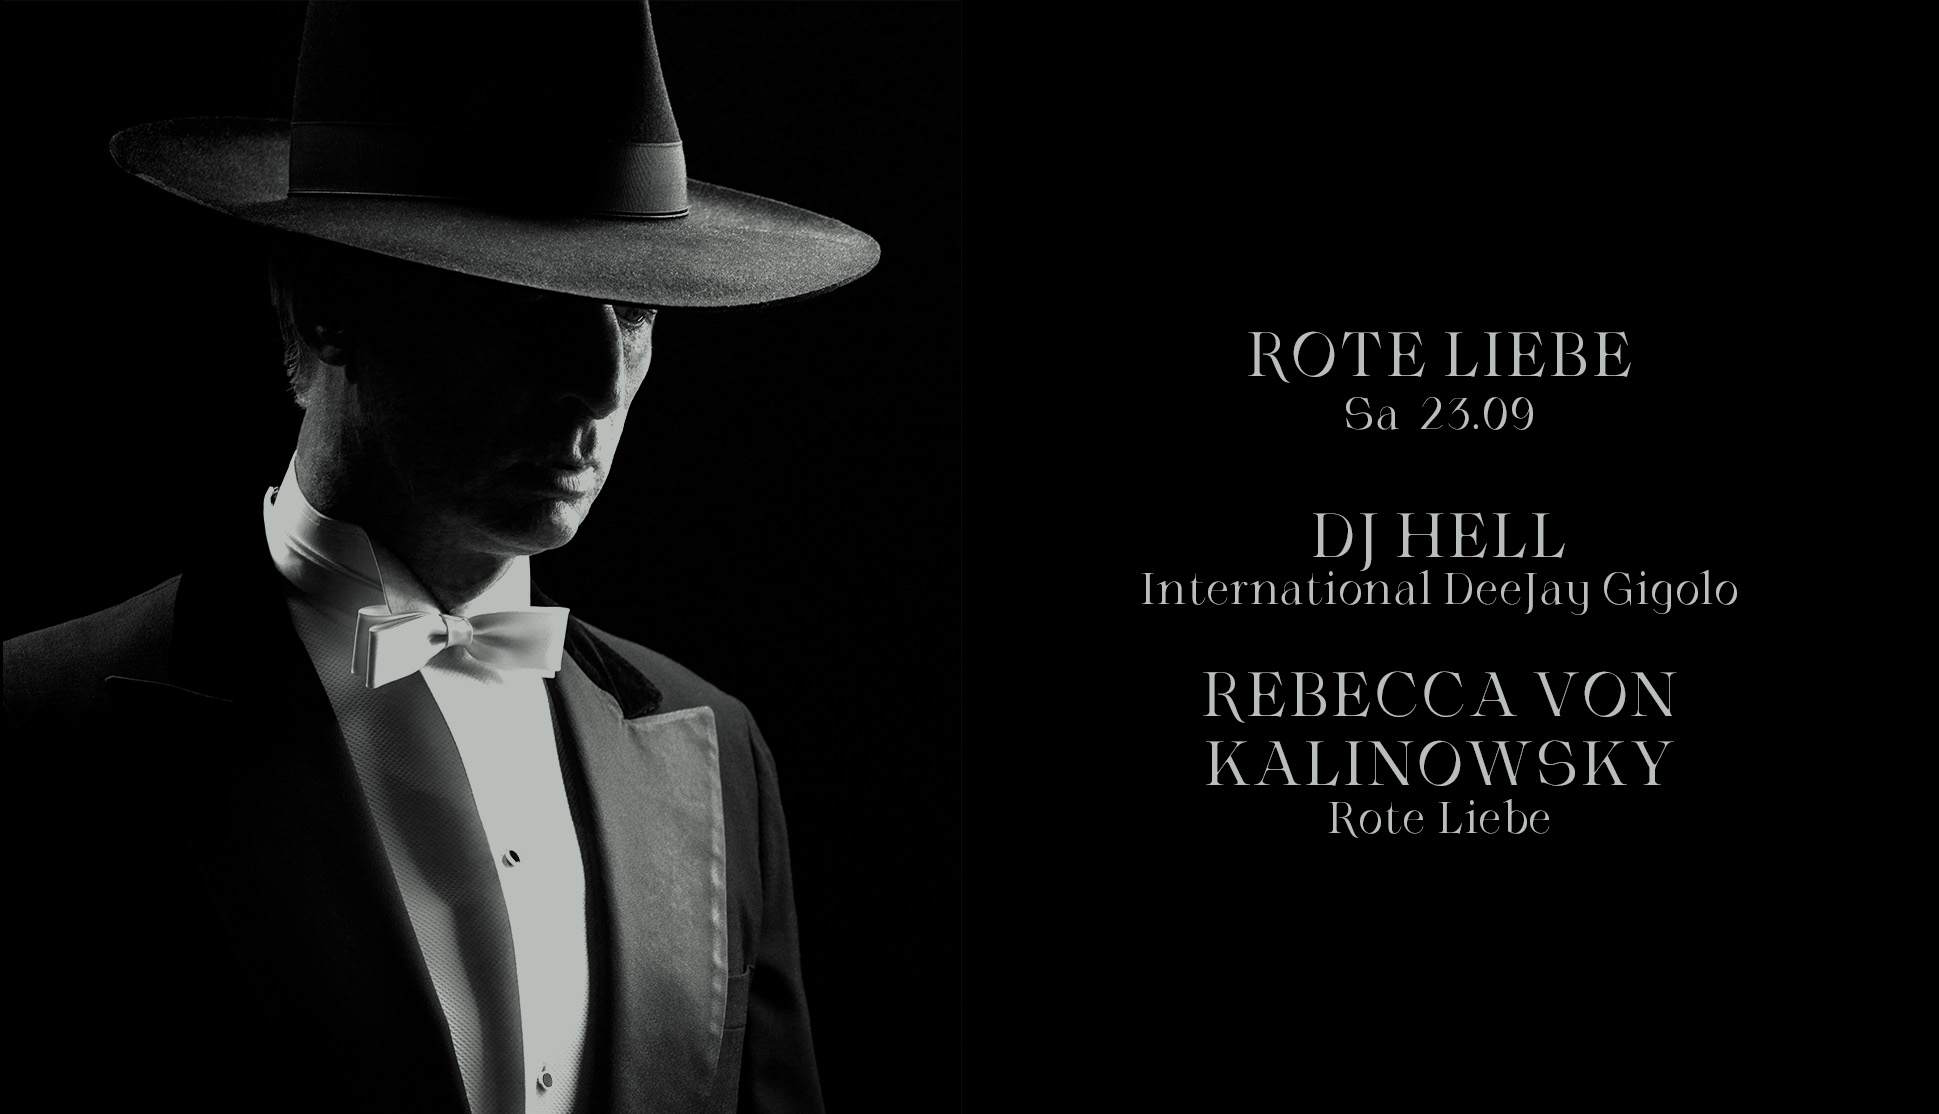 Rote Liebe with DJ Hell & Rebecca von Kalinowsky - フライヤー表